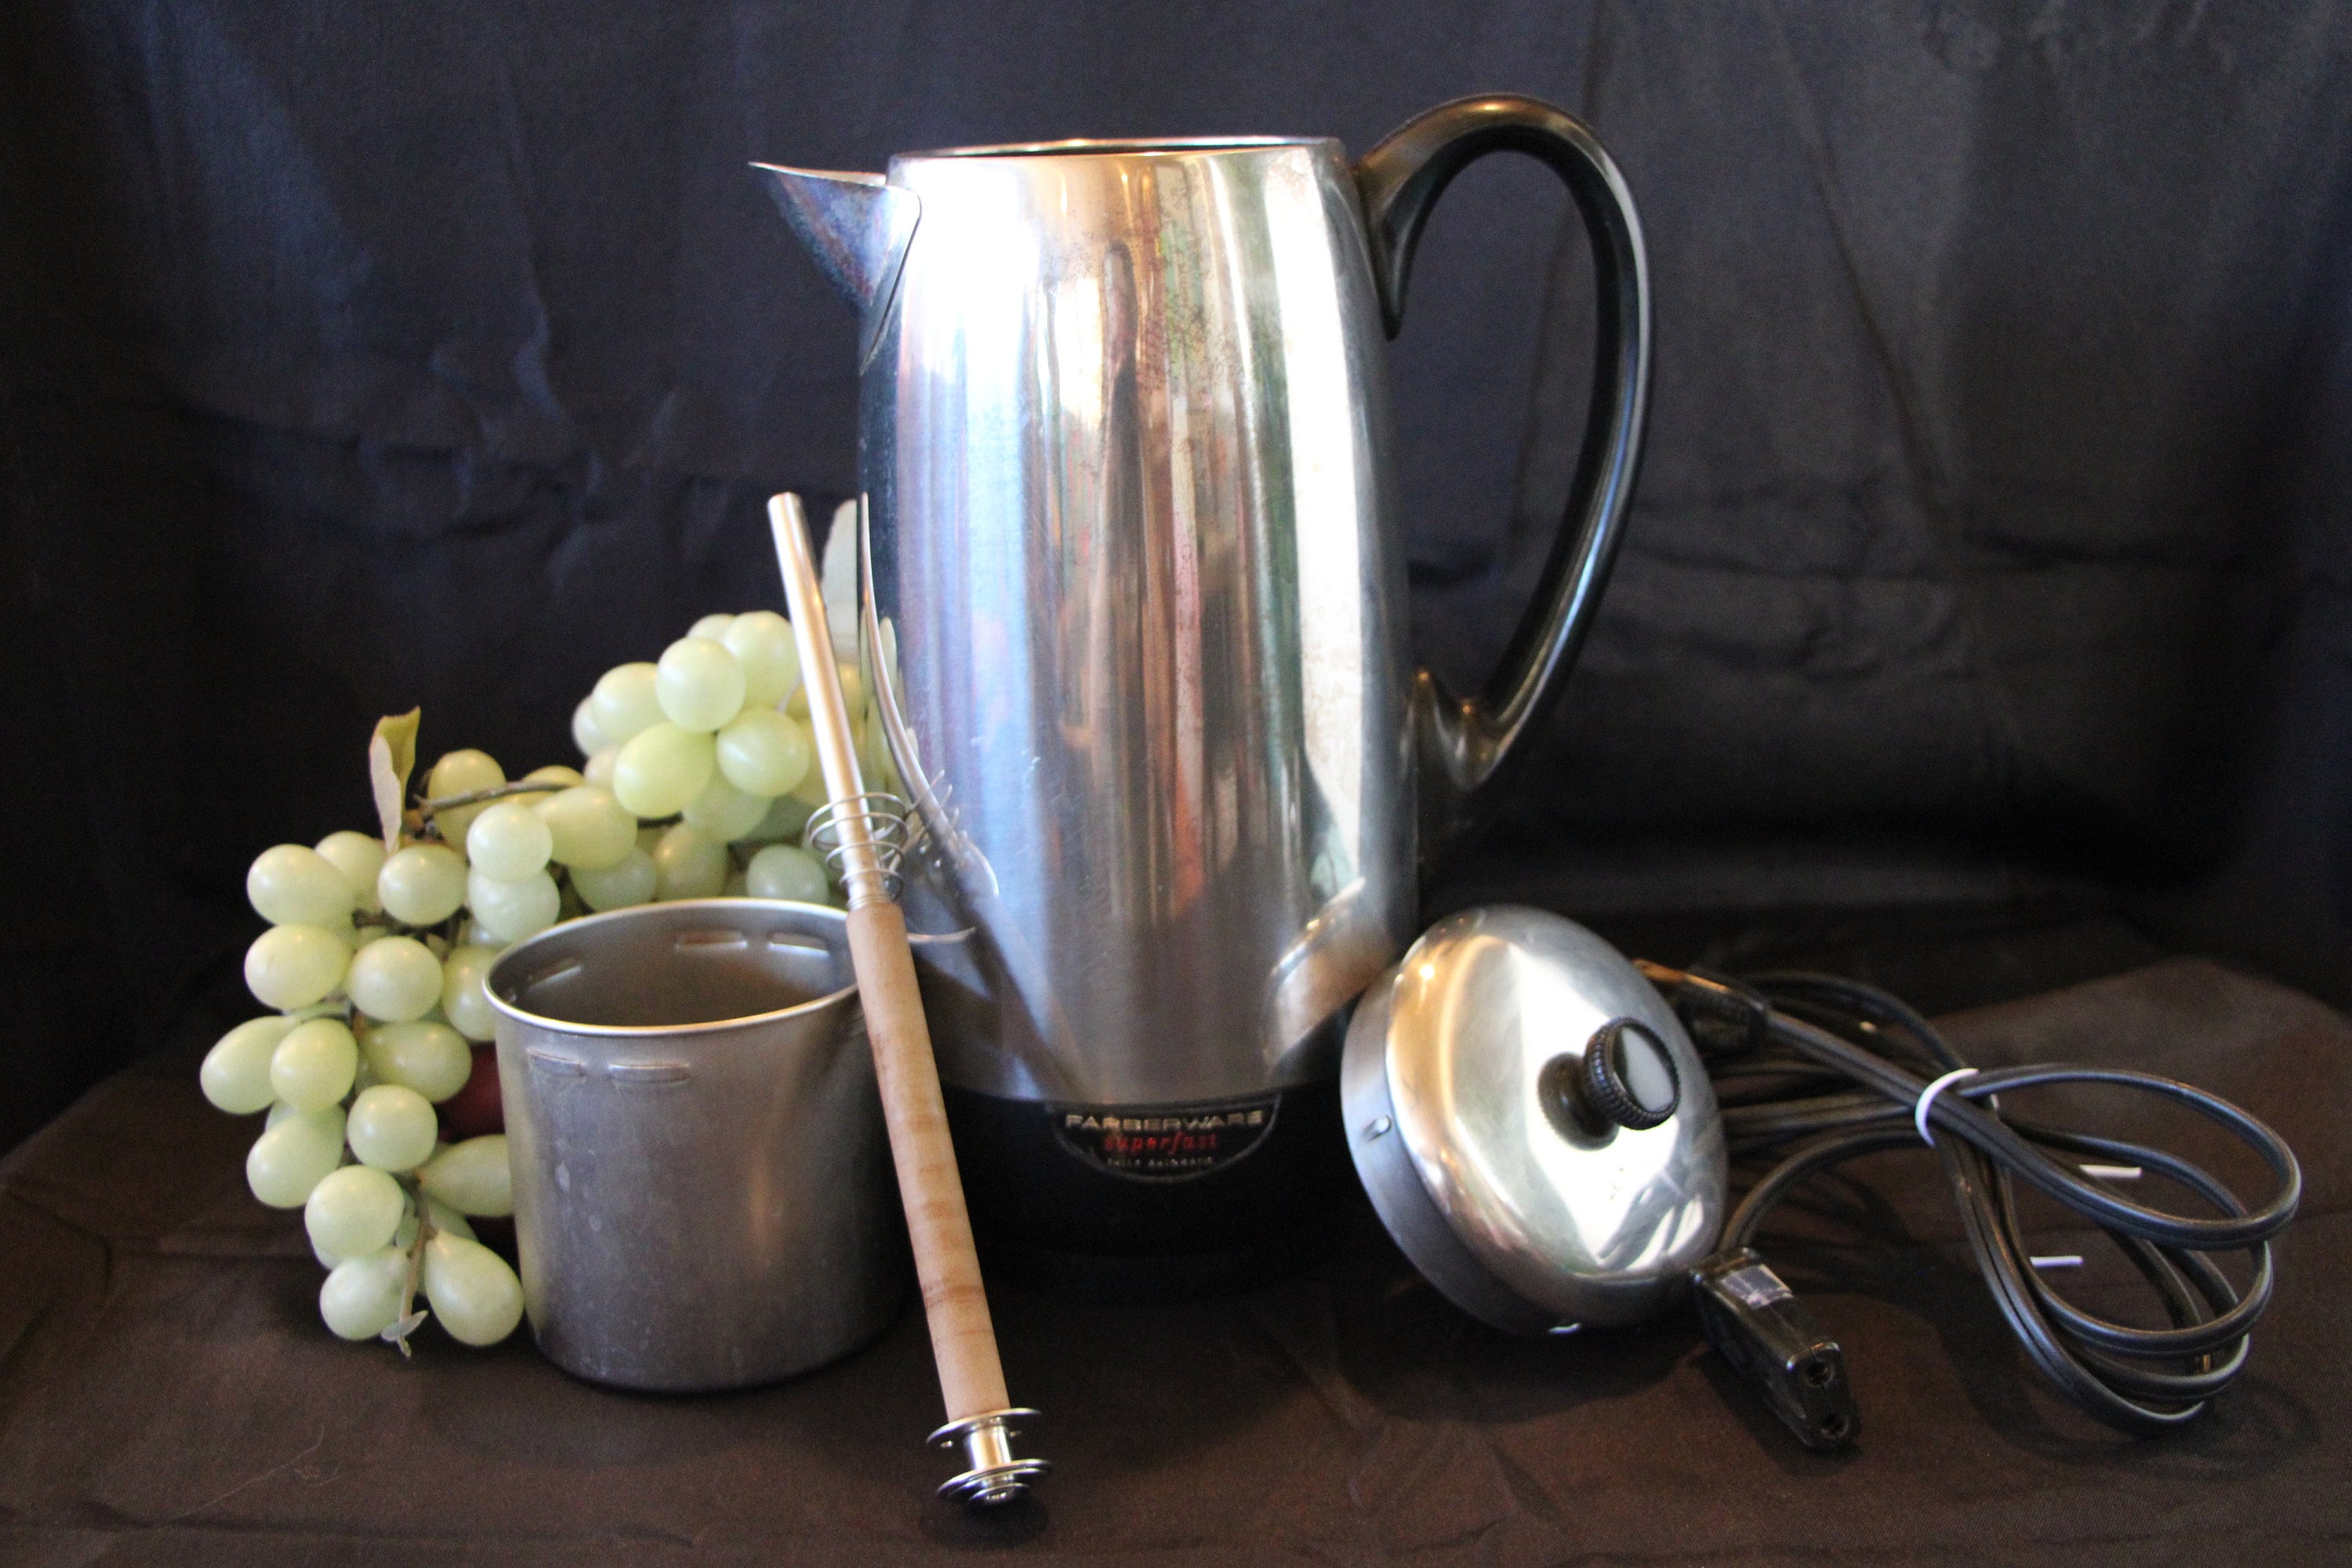 Farberware, Kitchen, Vtg Farberware Superfast Coffee Percolator 38b  Electric 28 Cup Made In Usa